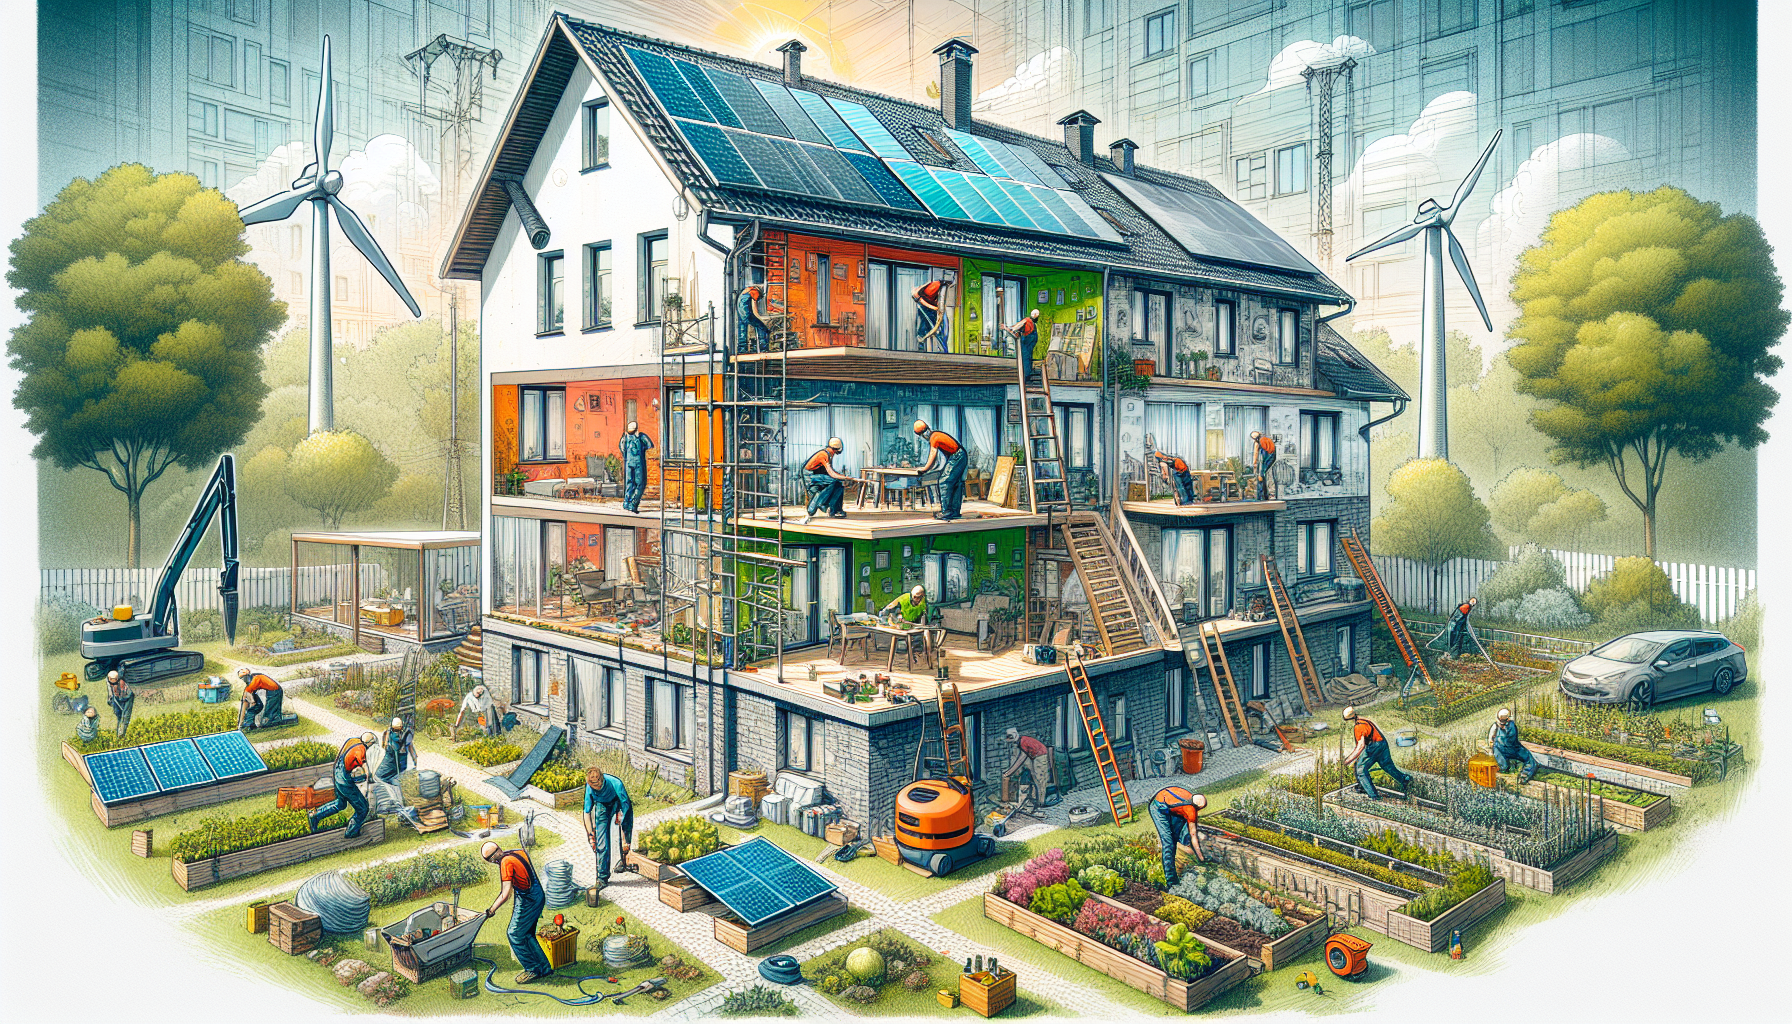 Energetische Sanierung im Mehrfamilienhaus: Grundlagen und Ziele. Illustration eines Mehrfamilienhauses mit energetischer Sanierung